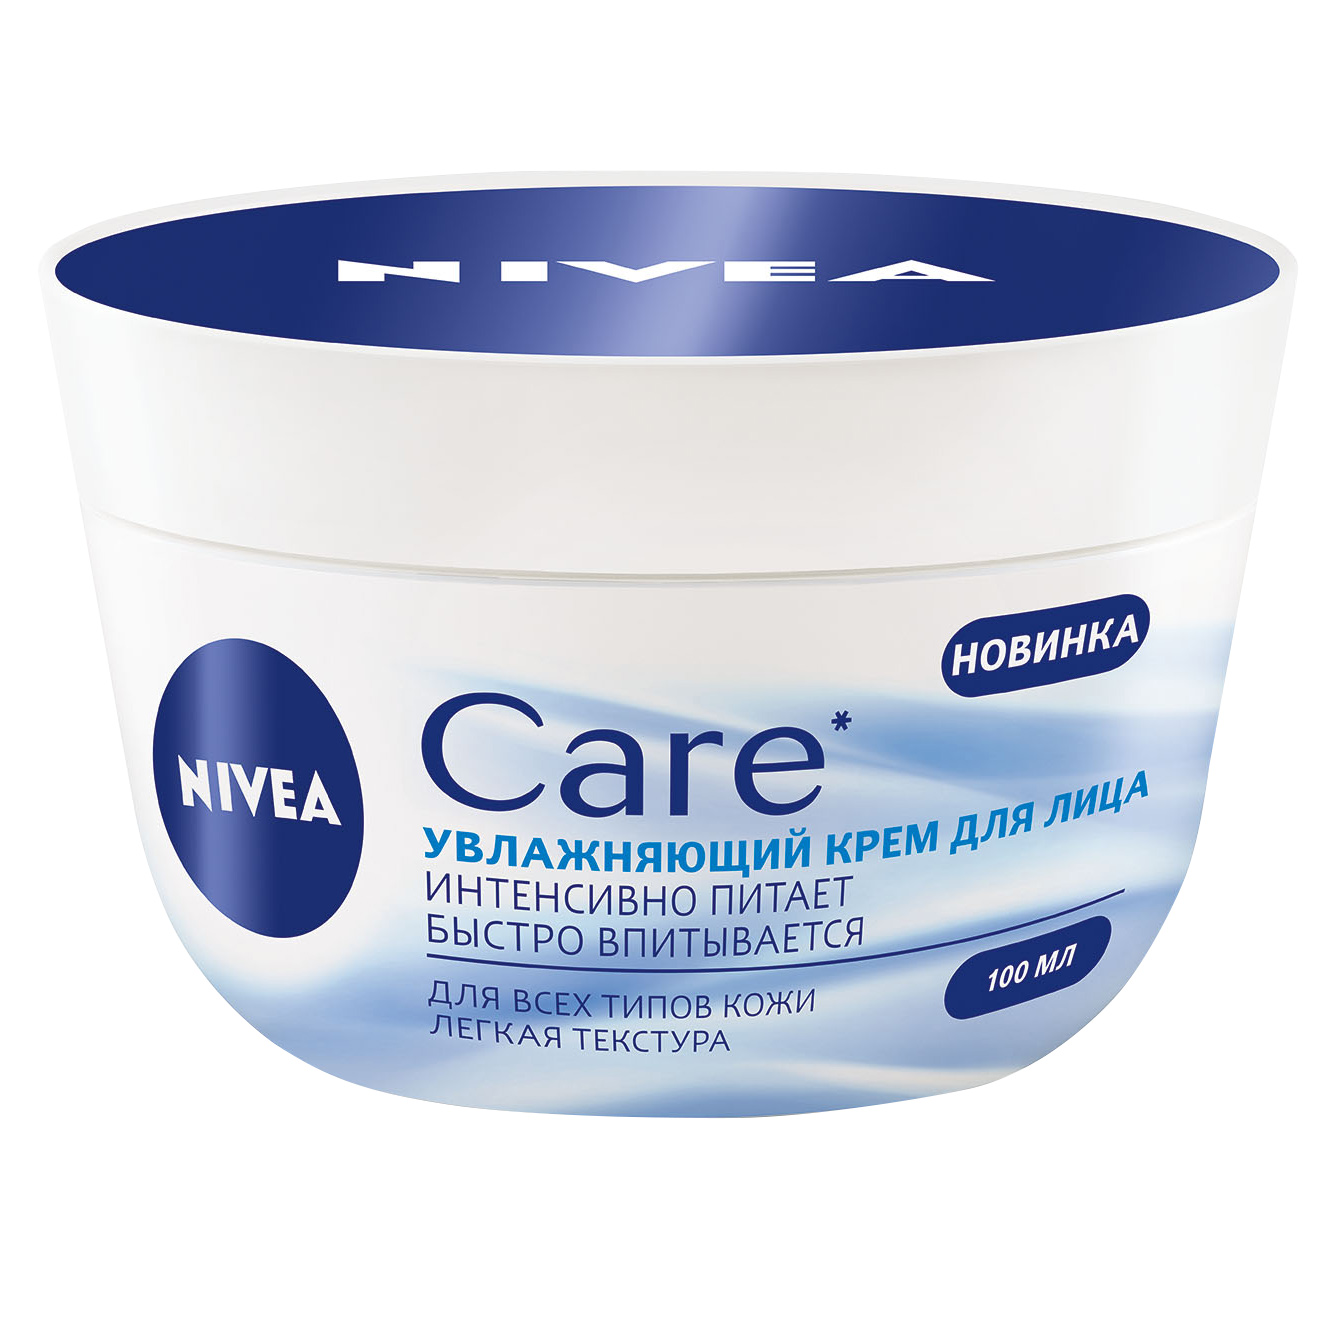 Питательный крем-легкость Nivea Care для всех типов кожи 100 мл ночной oil крем для лица bisou восстанавливающий для всех типов кожи 50 мл